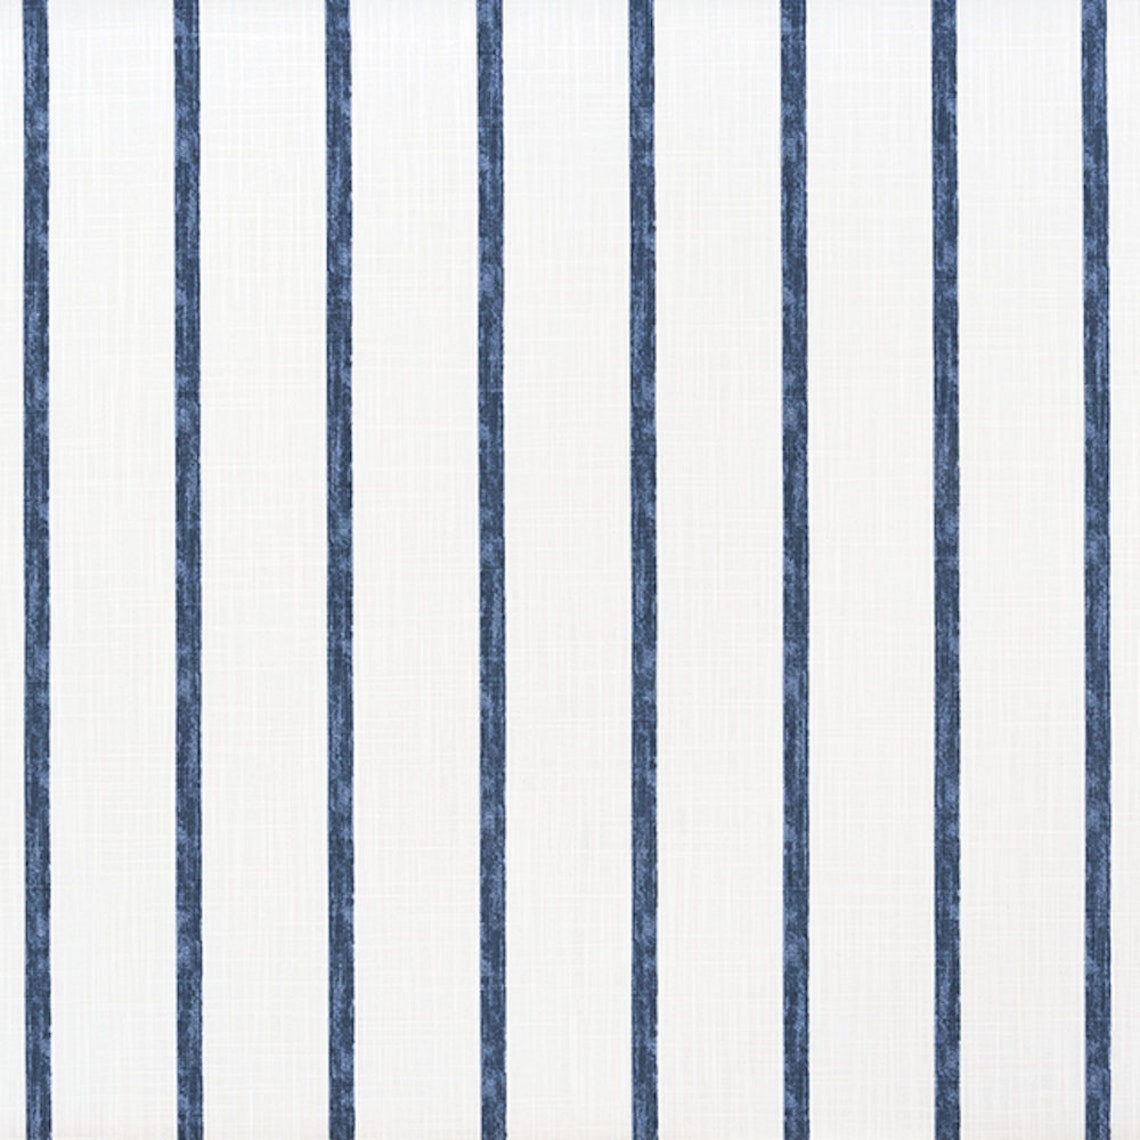 duvet cover in modern farmhouse miles italian denim blue stripe